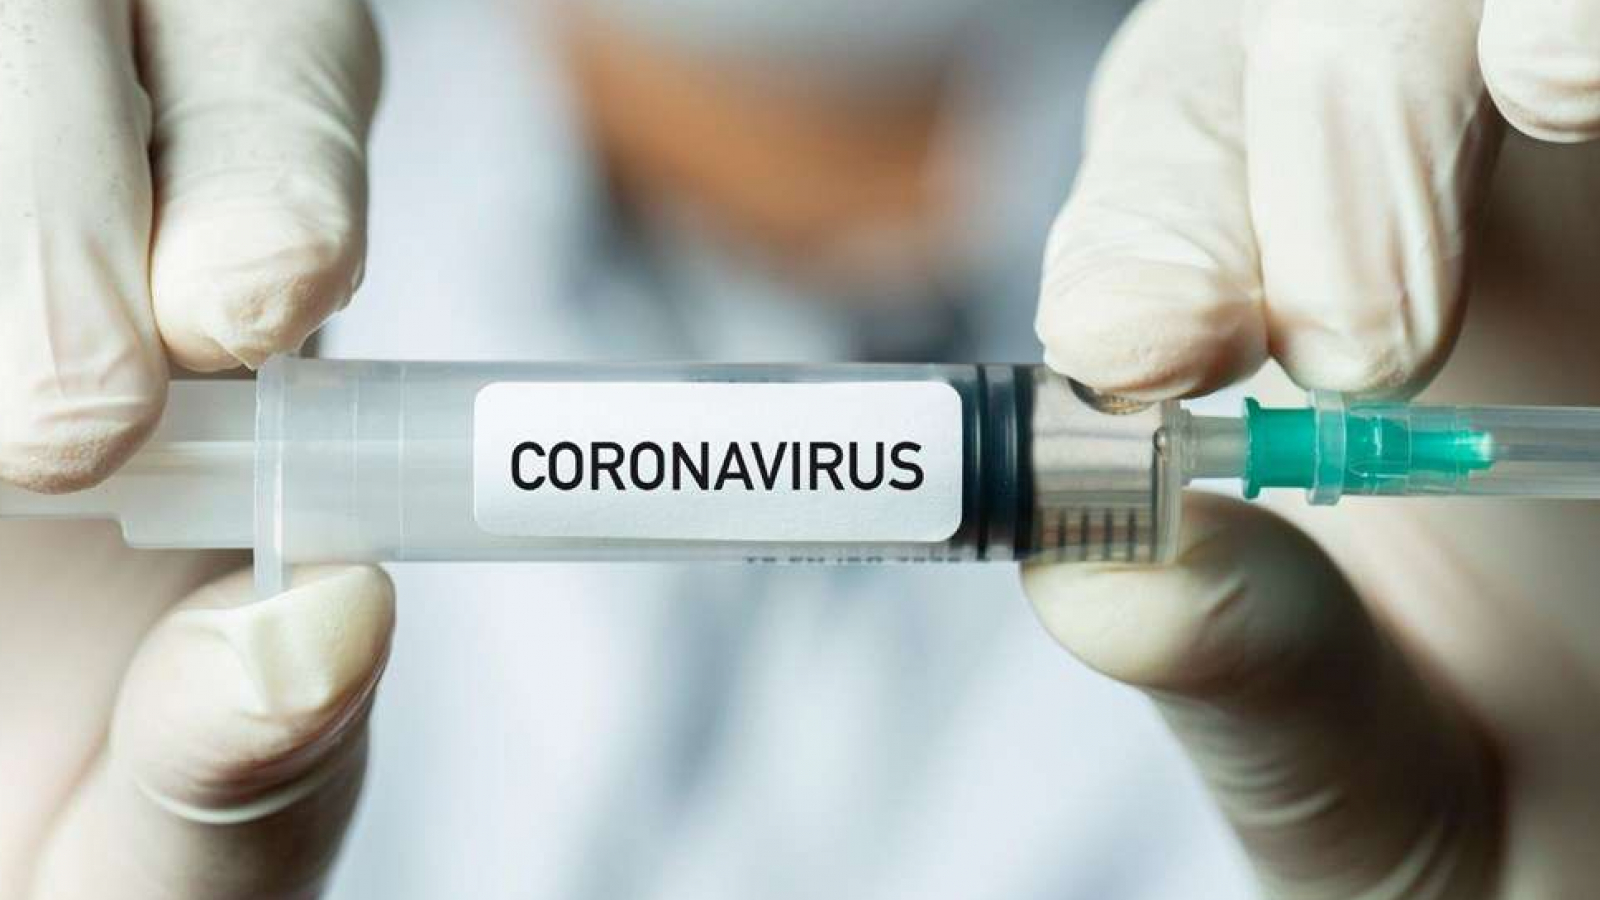 Tüm kamu hastanelerinde randevusuz Kovid-19 aşısı uygulamasına geçildi